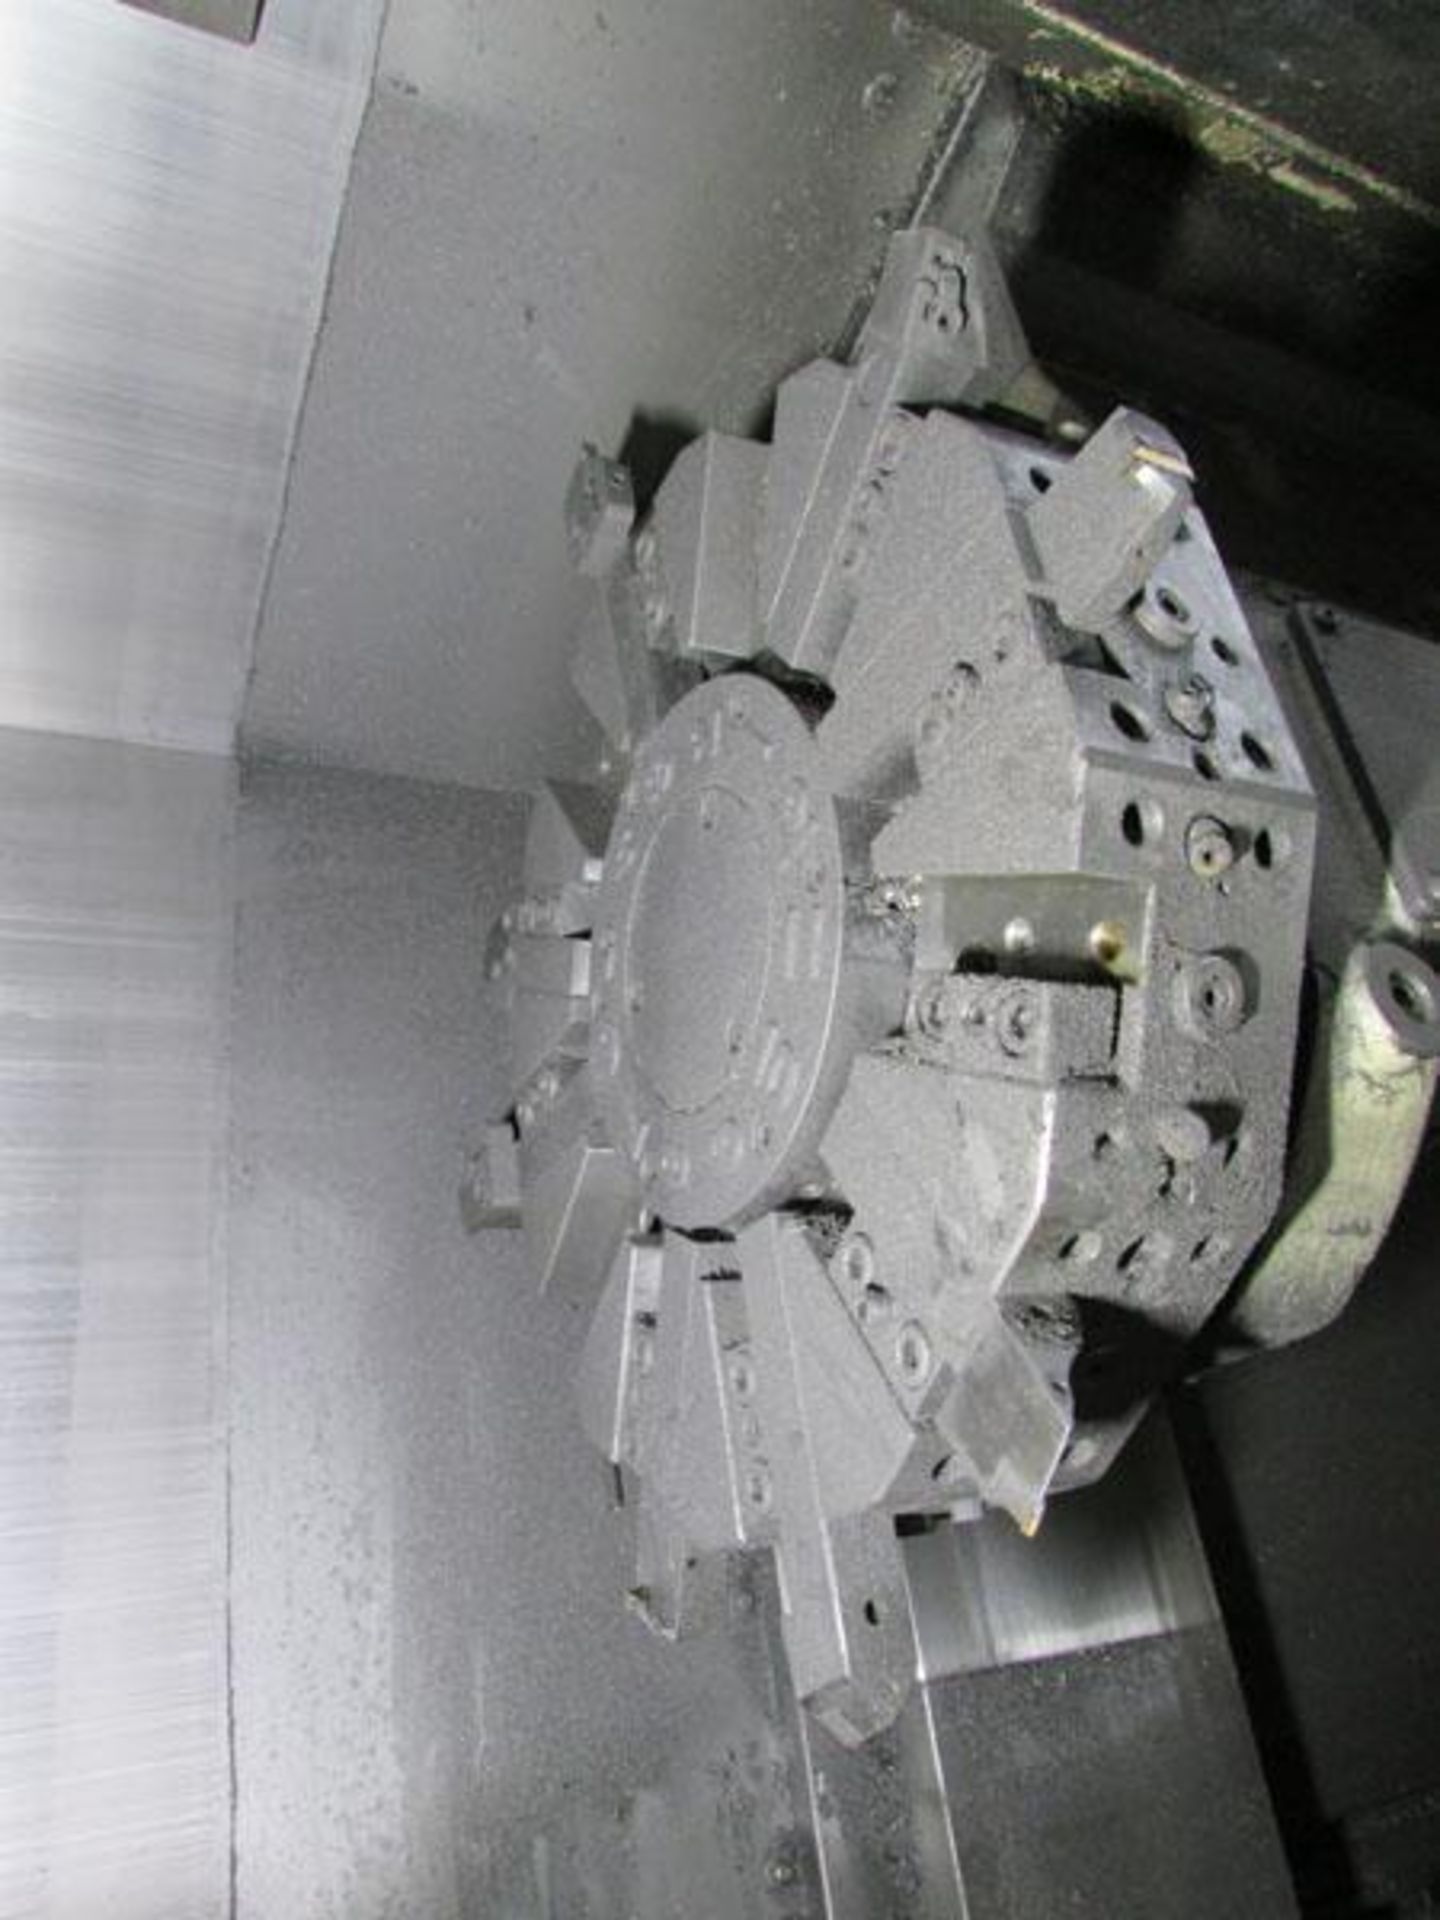 2003 Okuma Simul Turn LU300 2SC600 Twin Turret CNC Horizontal Turning Center - Image 7 of 13